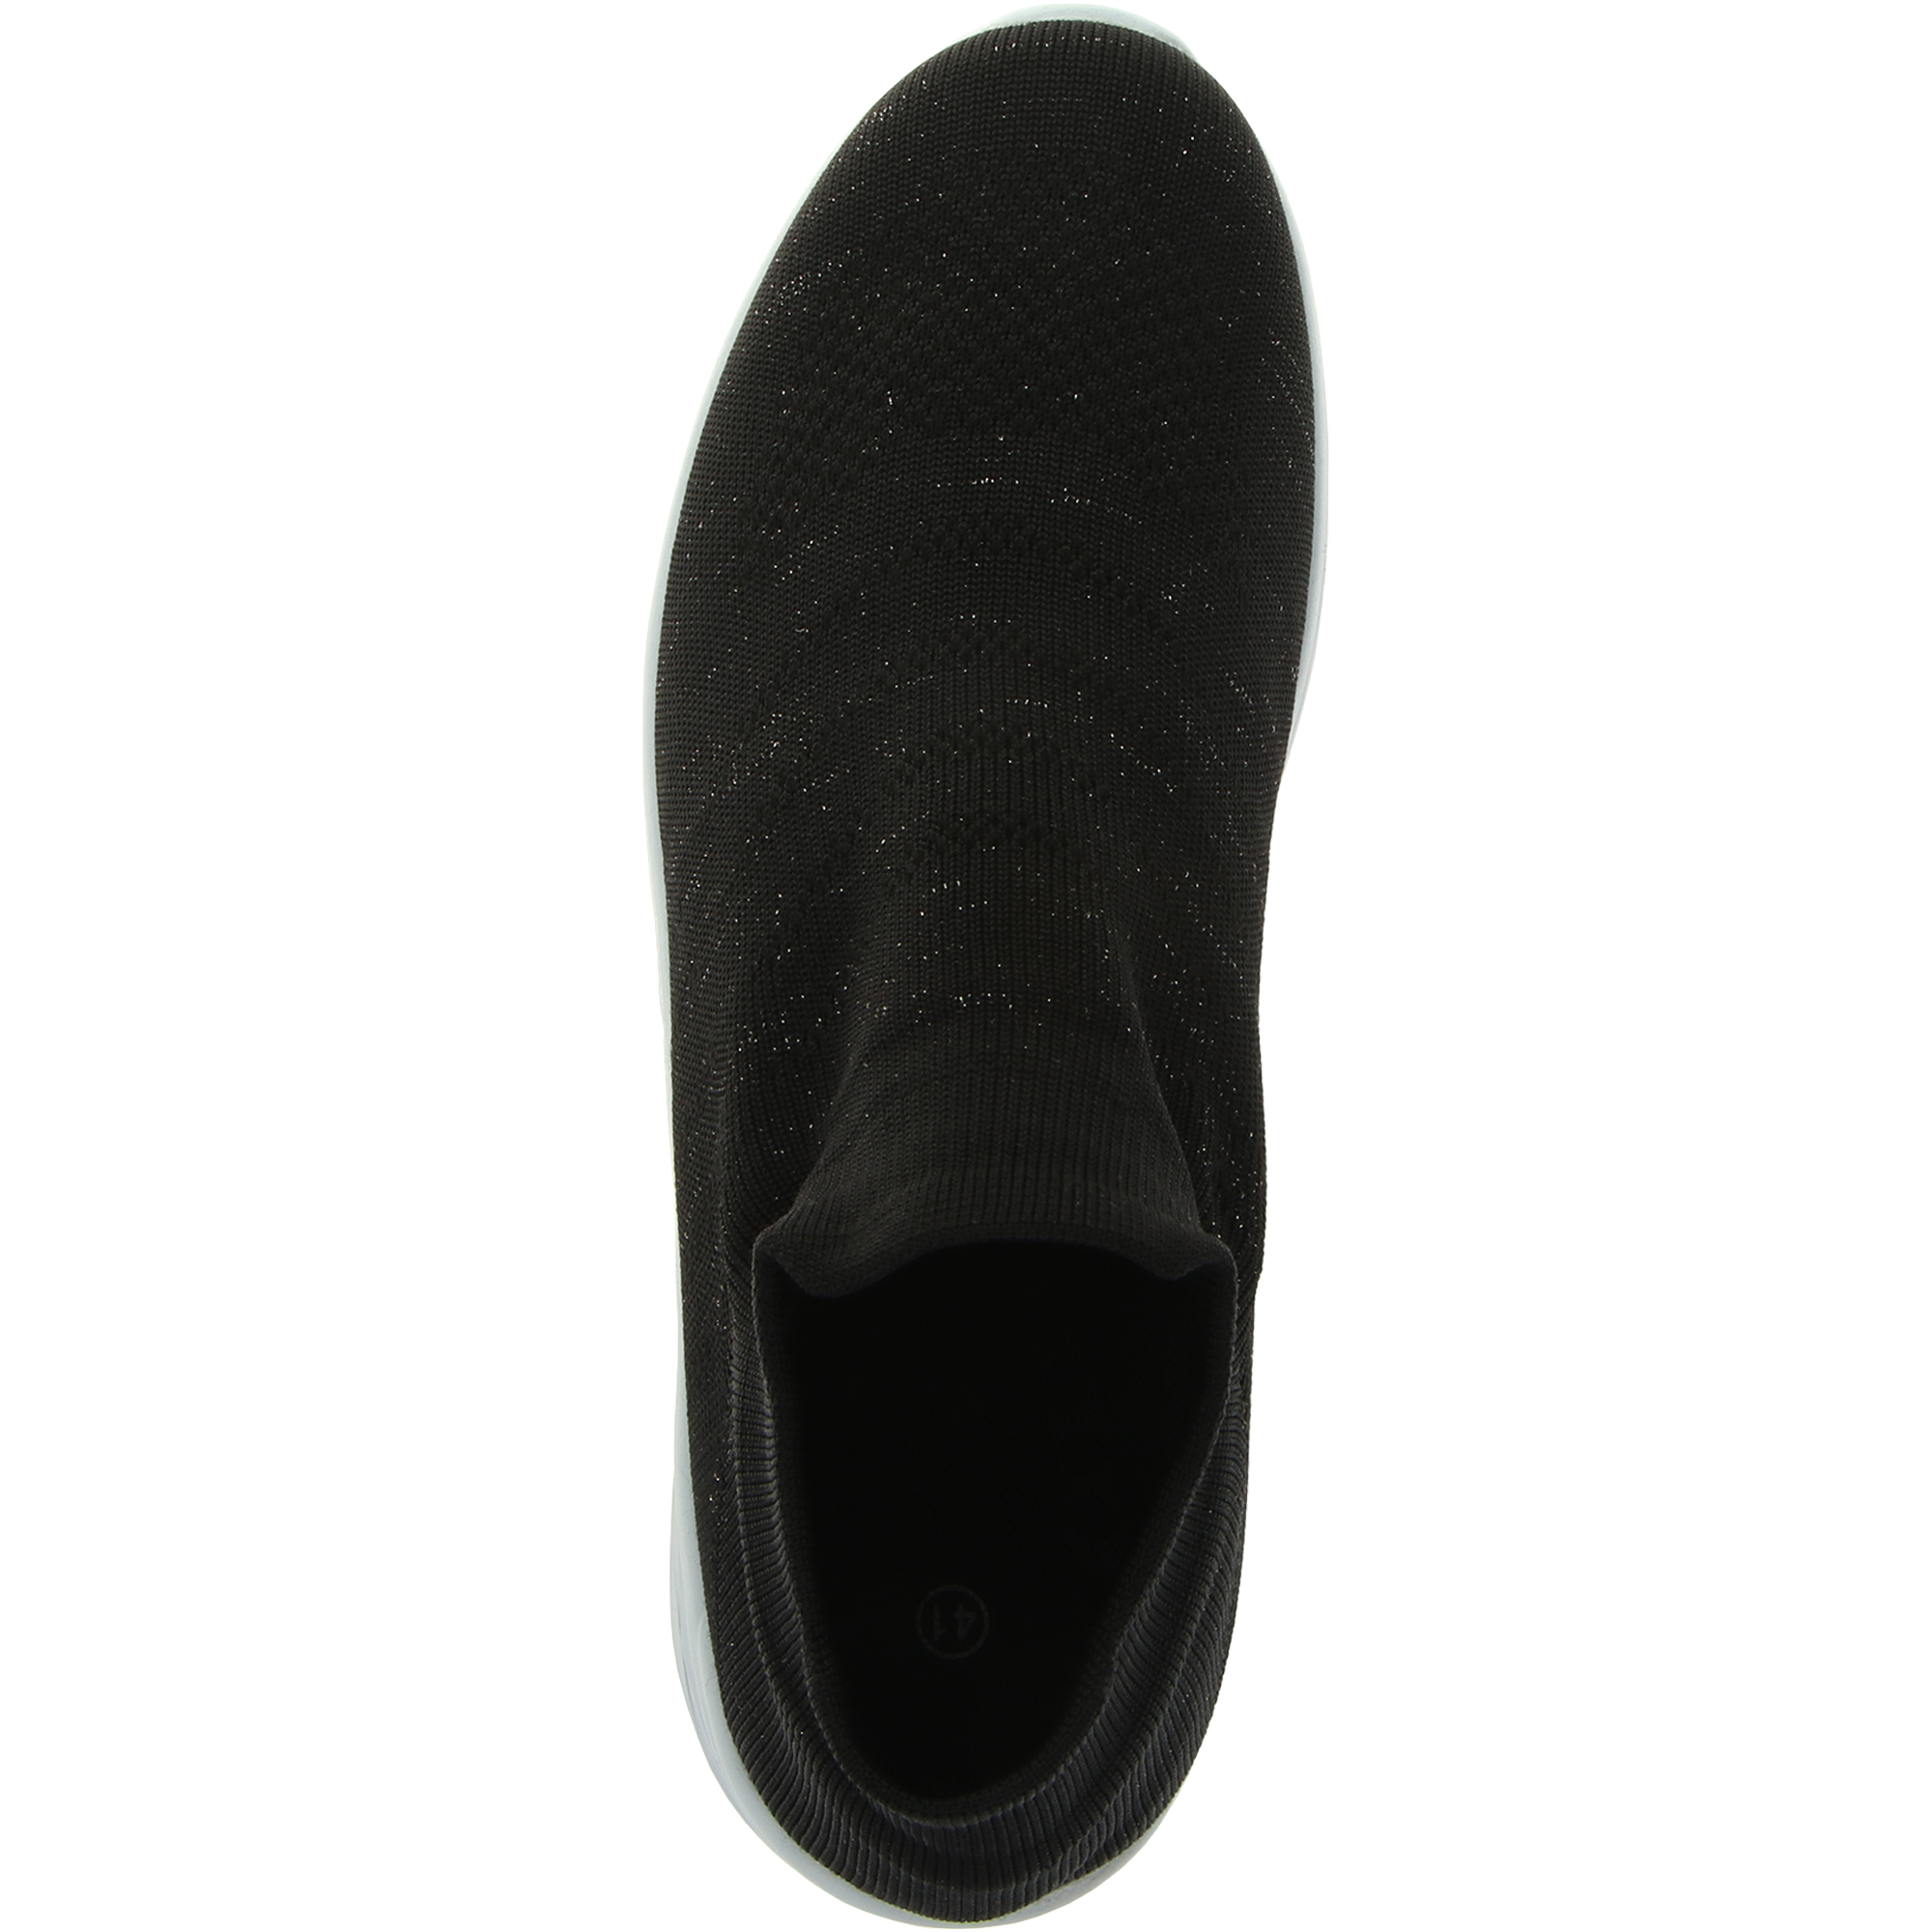 Жескние кроссовки TG Global GT-19190 BLACK чёрные, цвет чёрный, размер 36 - фото 6